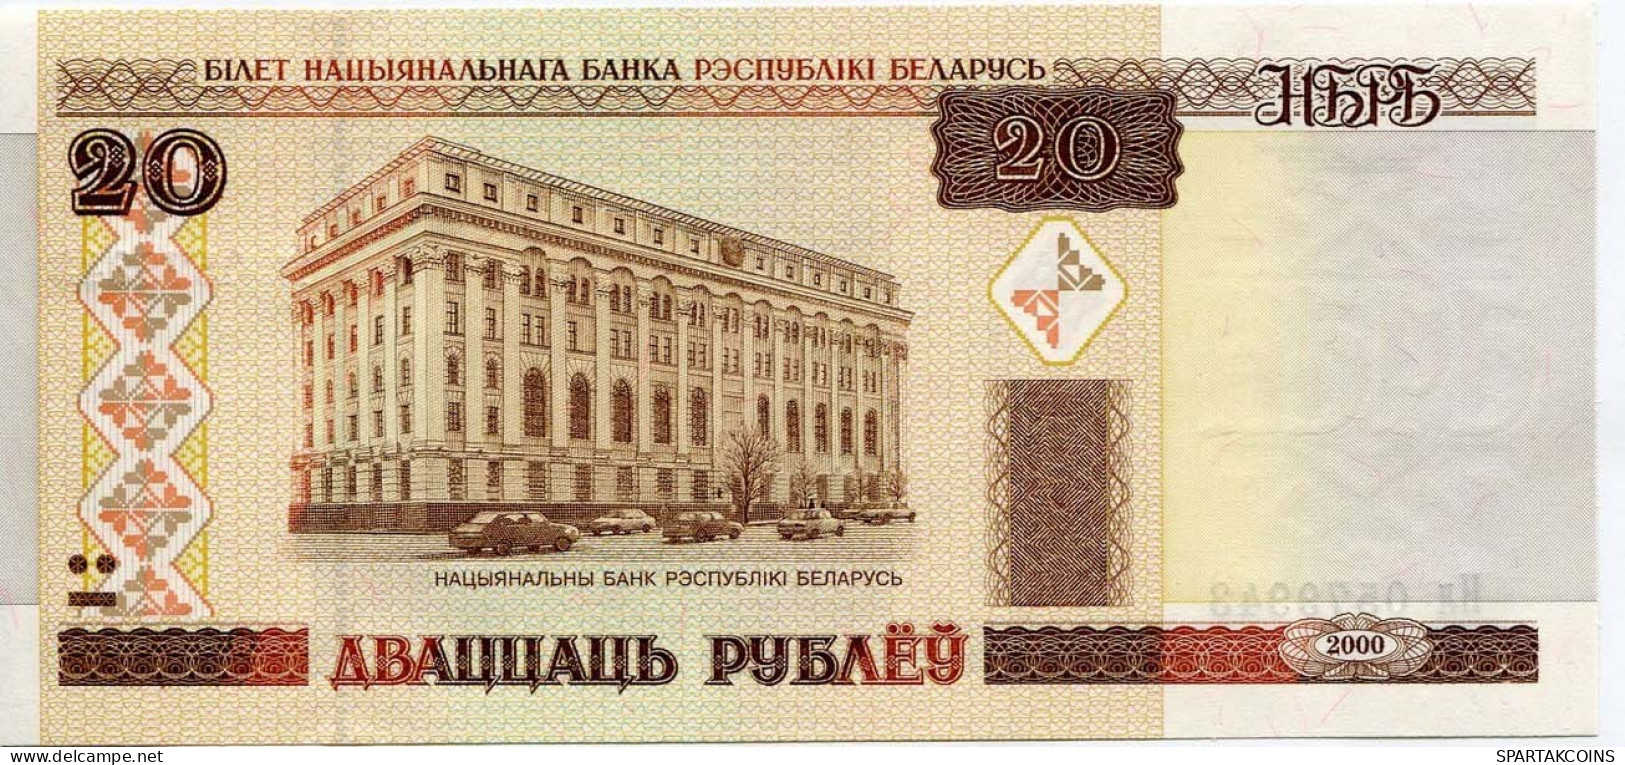 BELARUS 20 RUBLES 2000 The National Bank Of Belarusians Paper Money Banknote #P10201.V - [11] Lokale Uitgaven